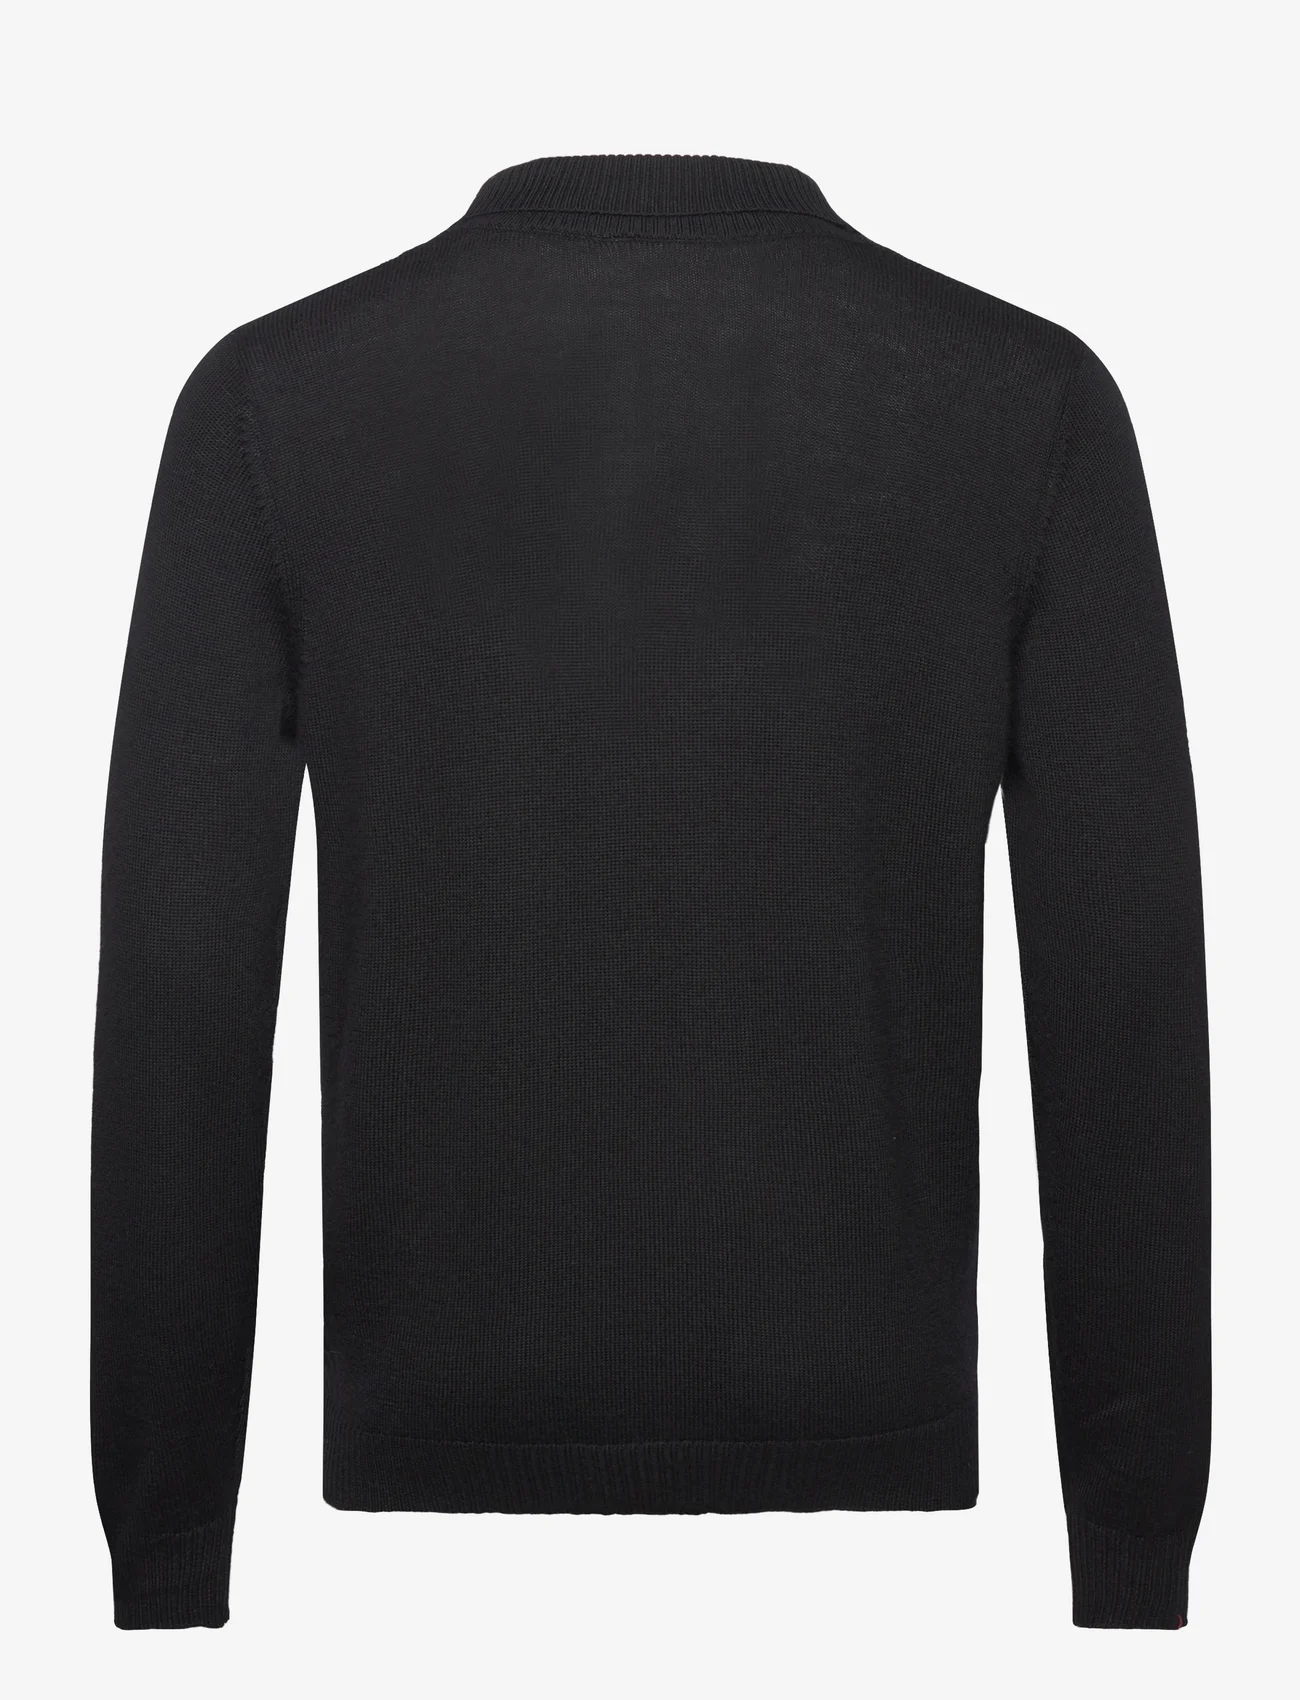 Bruun & Stengade - BS Nohr Regular Fit Knitwear - cardigans - black - 1